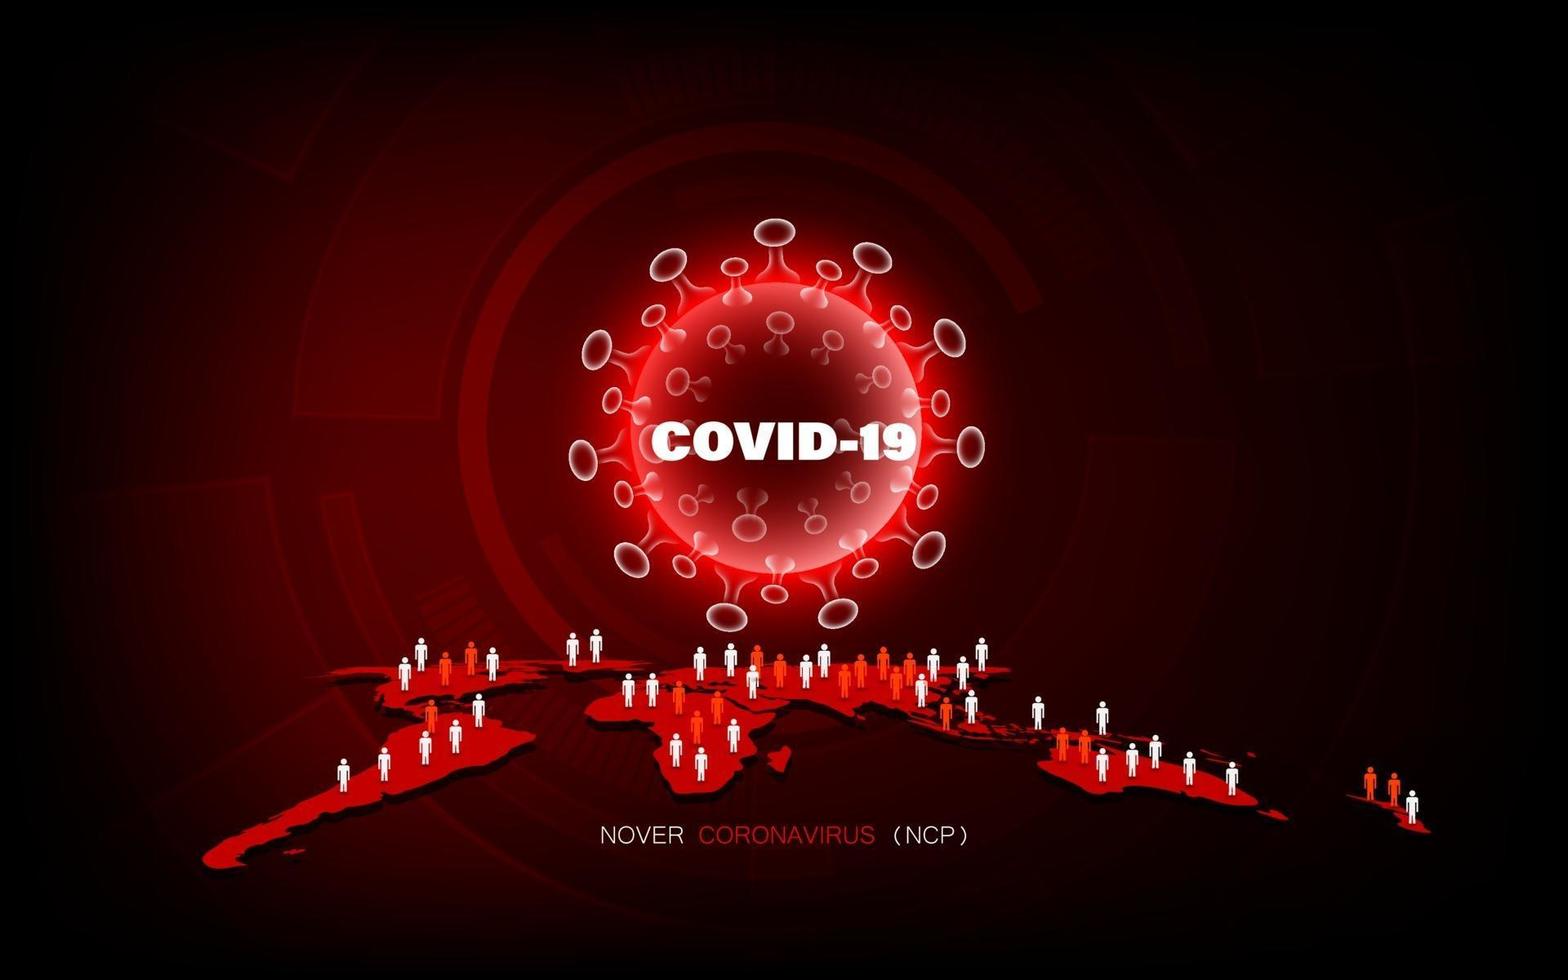 enfermedad de coronavirus infección por covid-19 pandemia médica en concepto mundial. vector